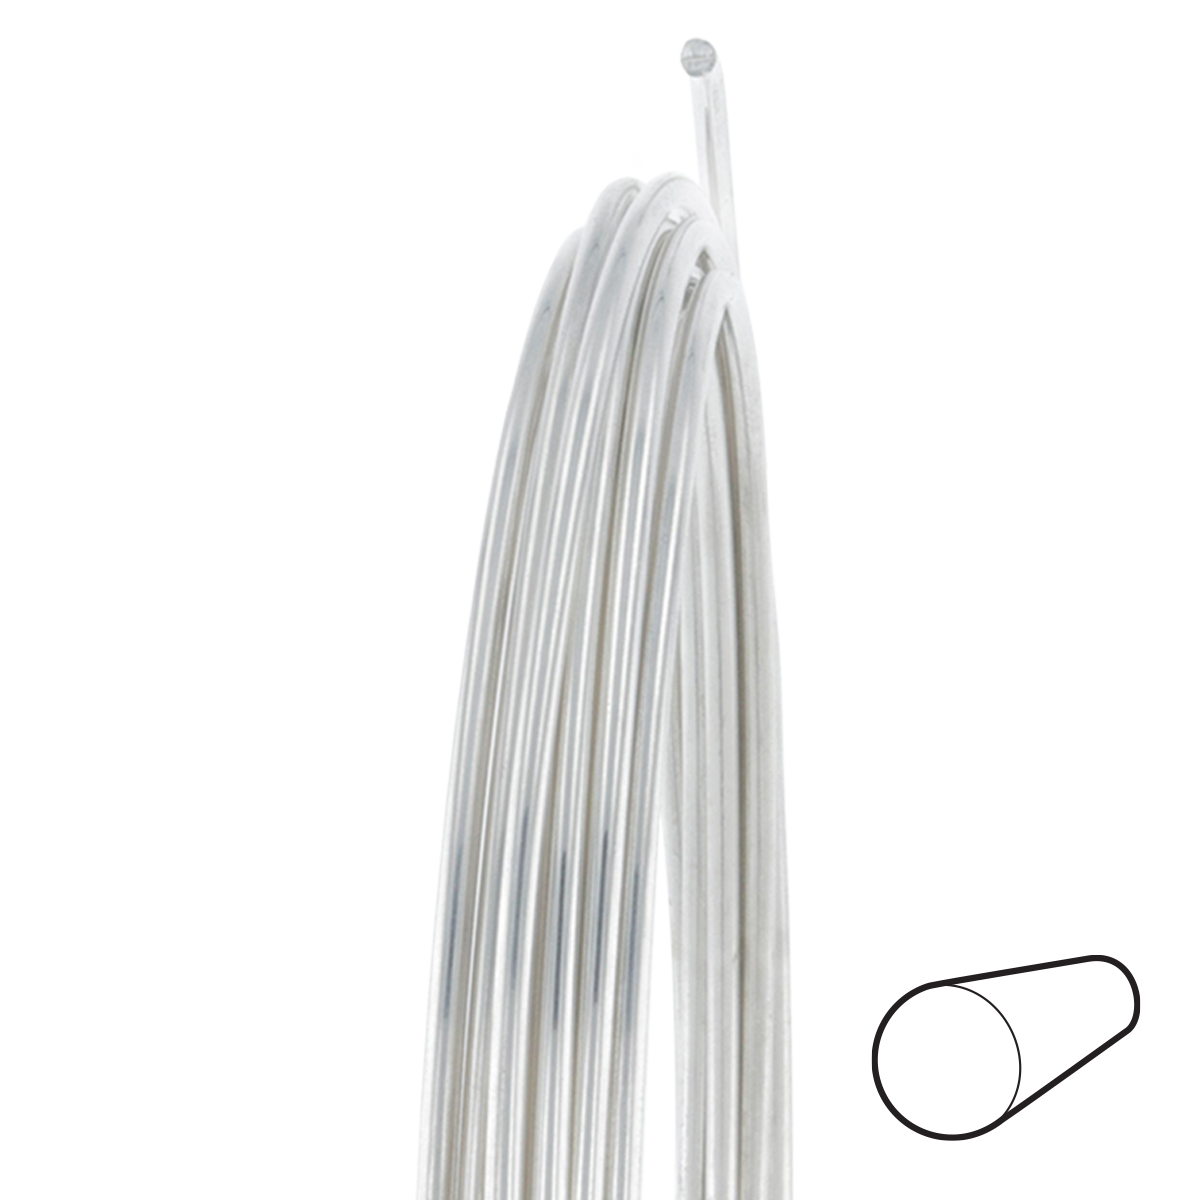 30 Gauge Round Dead Soft .925 Sterling Silver Wire: Wire Jewelry, Wire  Wrap Tutorials